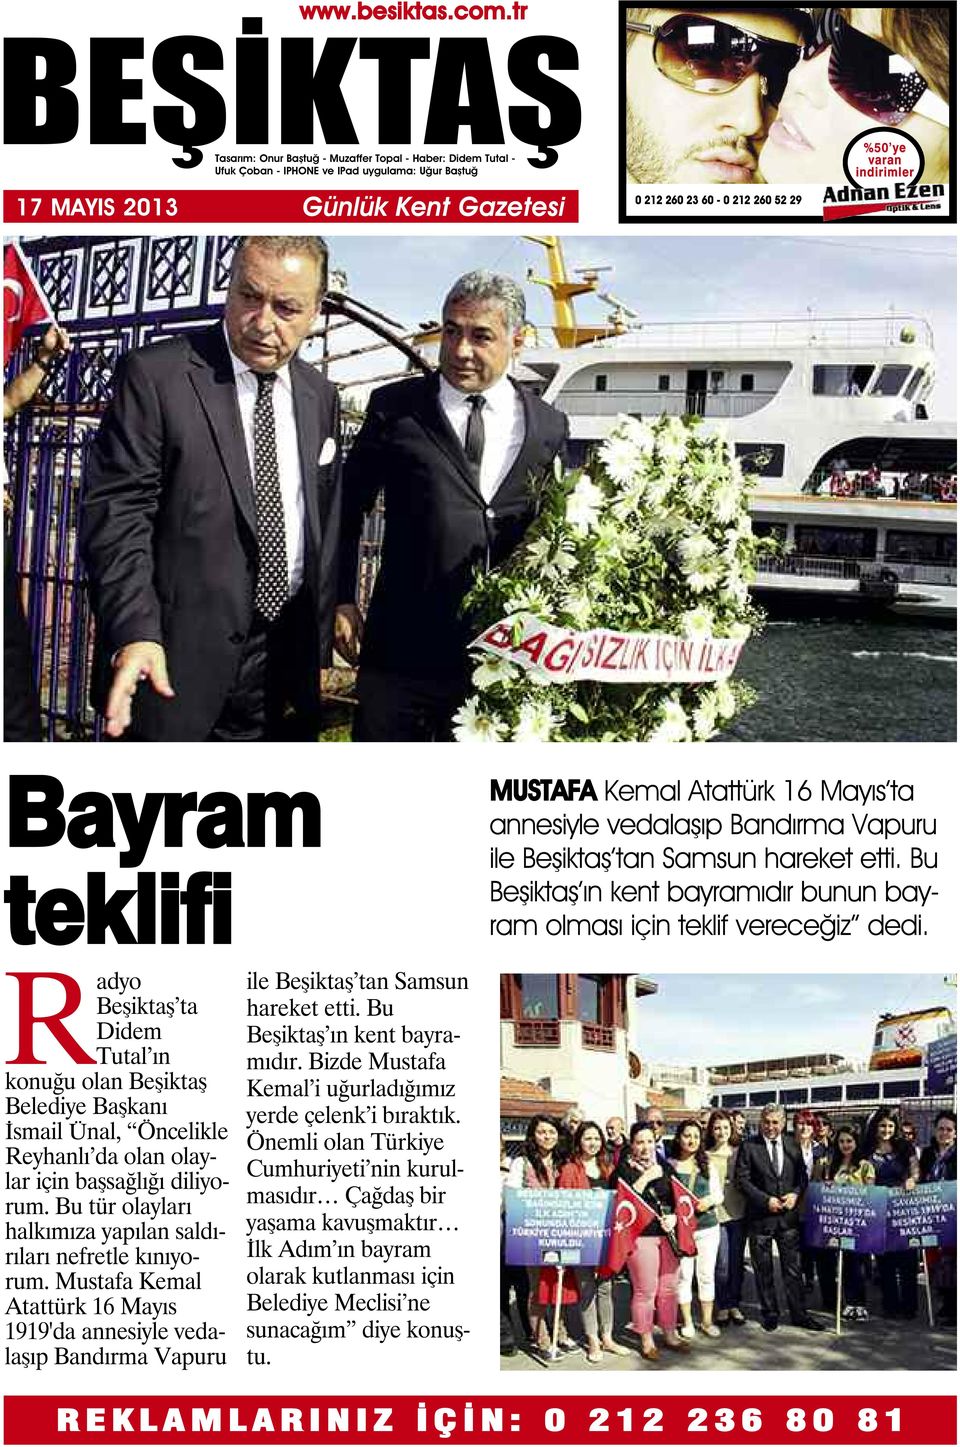 Radyo Beşiktaş ta Didem Tutal ın konuğu olan Beşiktaş Belediye Başkanı İsmail Ünal, Öncelikle Reyhanlı da olan olaylar için başsağlığı diliyorum.